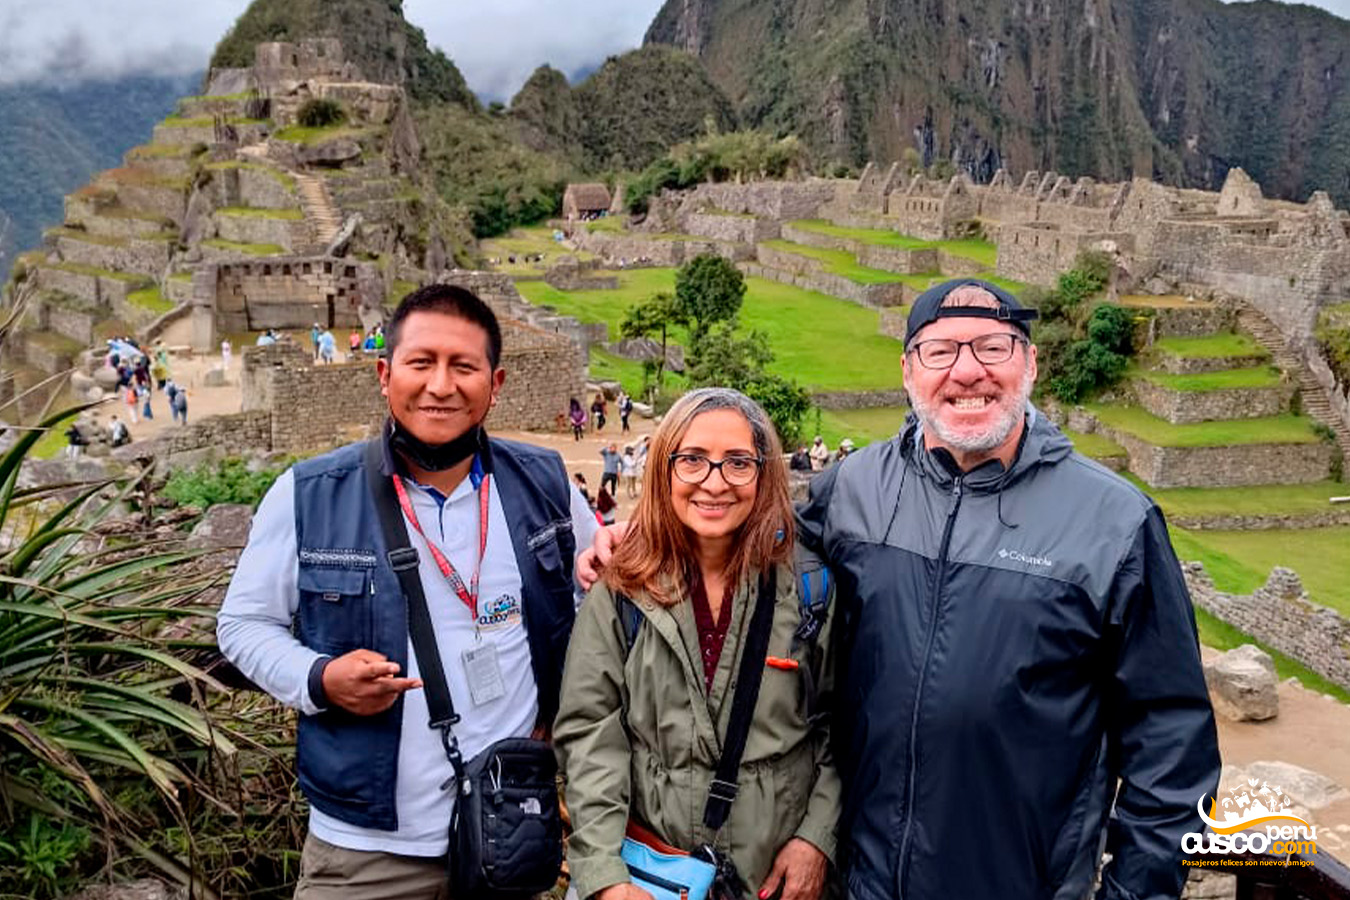 Serviço de guia para dois turistas em Machu Picchu. Fonte: CuscoPeru.com